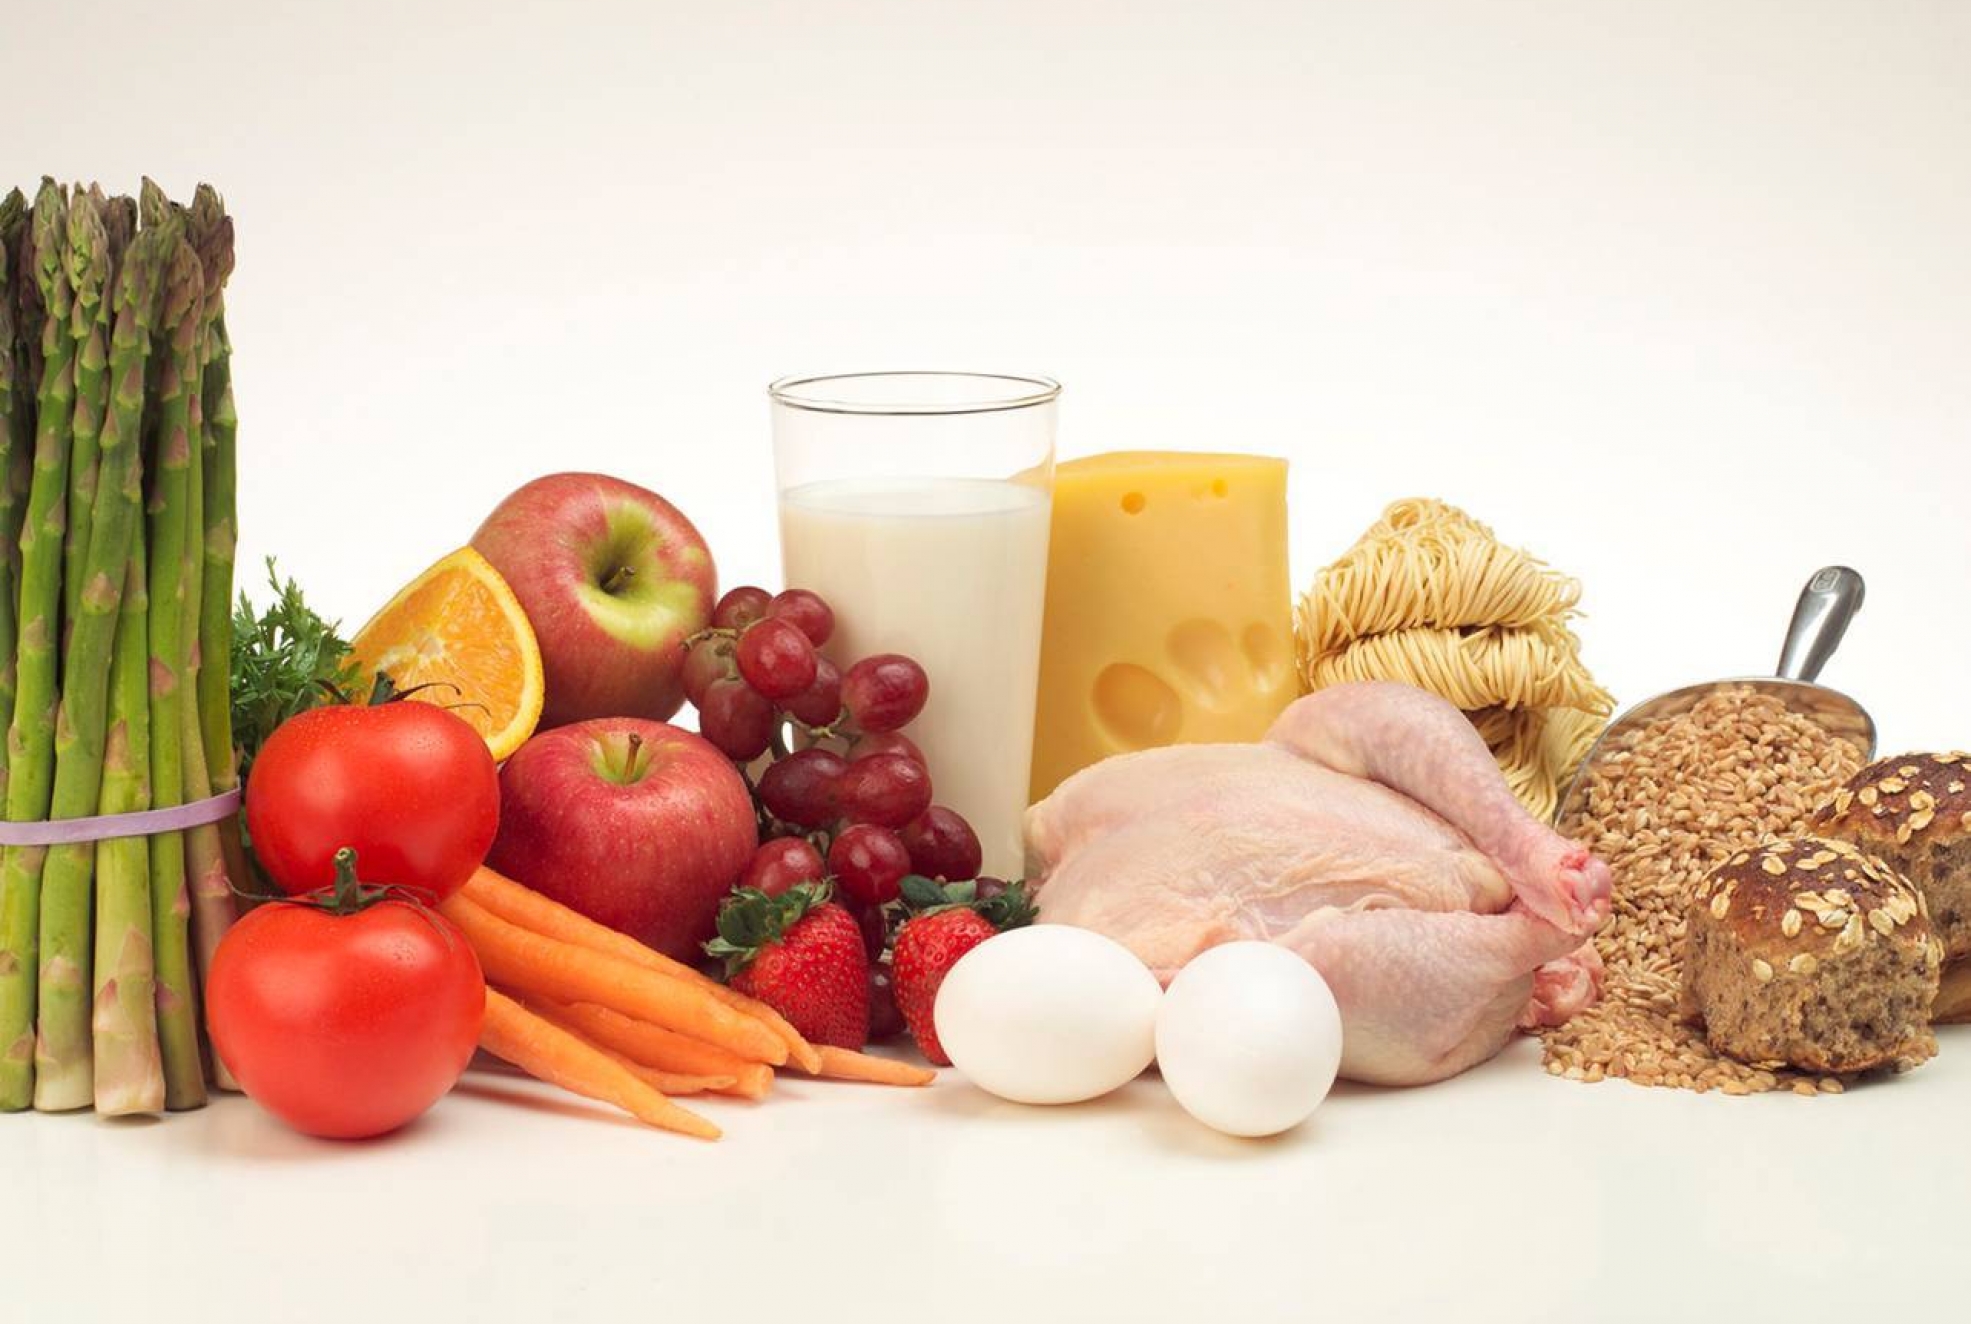 Питание белки и витамины. Продукты питания. Здоровая пища. Овощи фрукты мясо молоко. Питательные продукты.